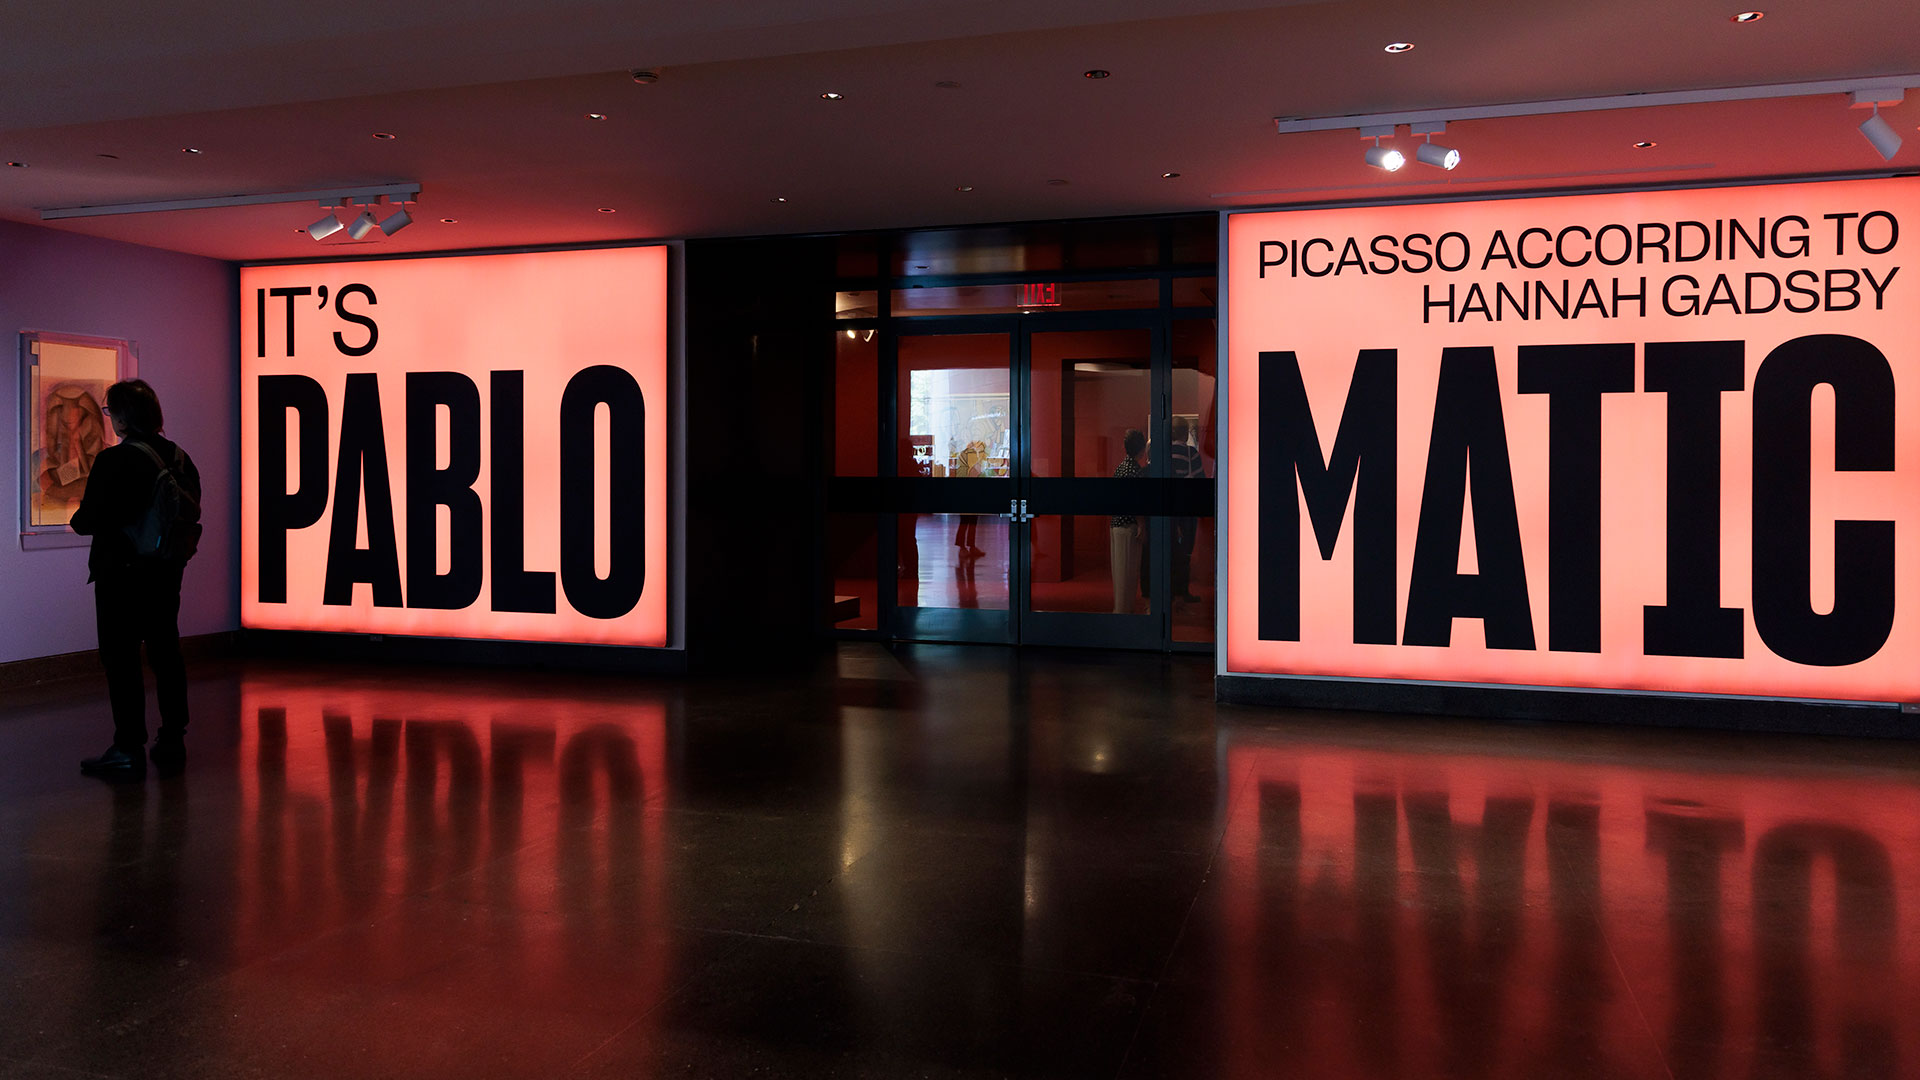 Una muestra feminista expone al Picasso más “misógino y narcisista” 